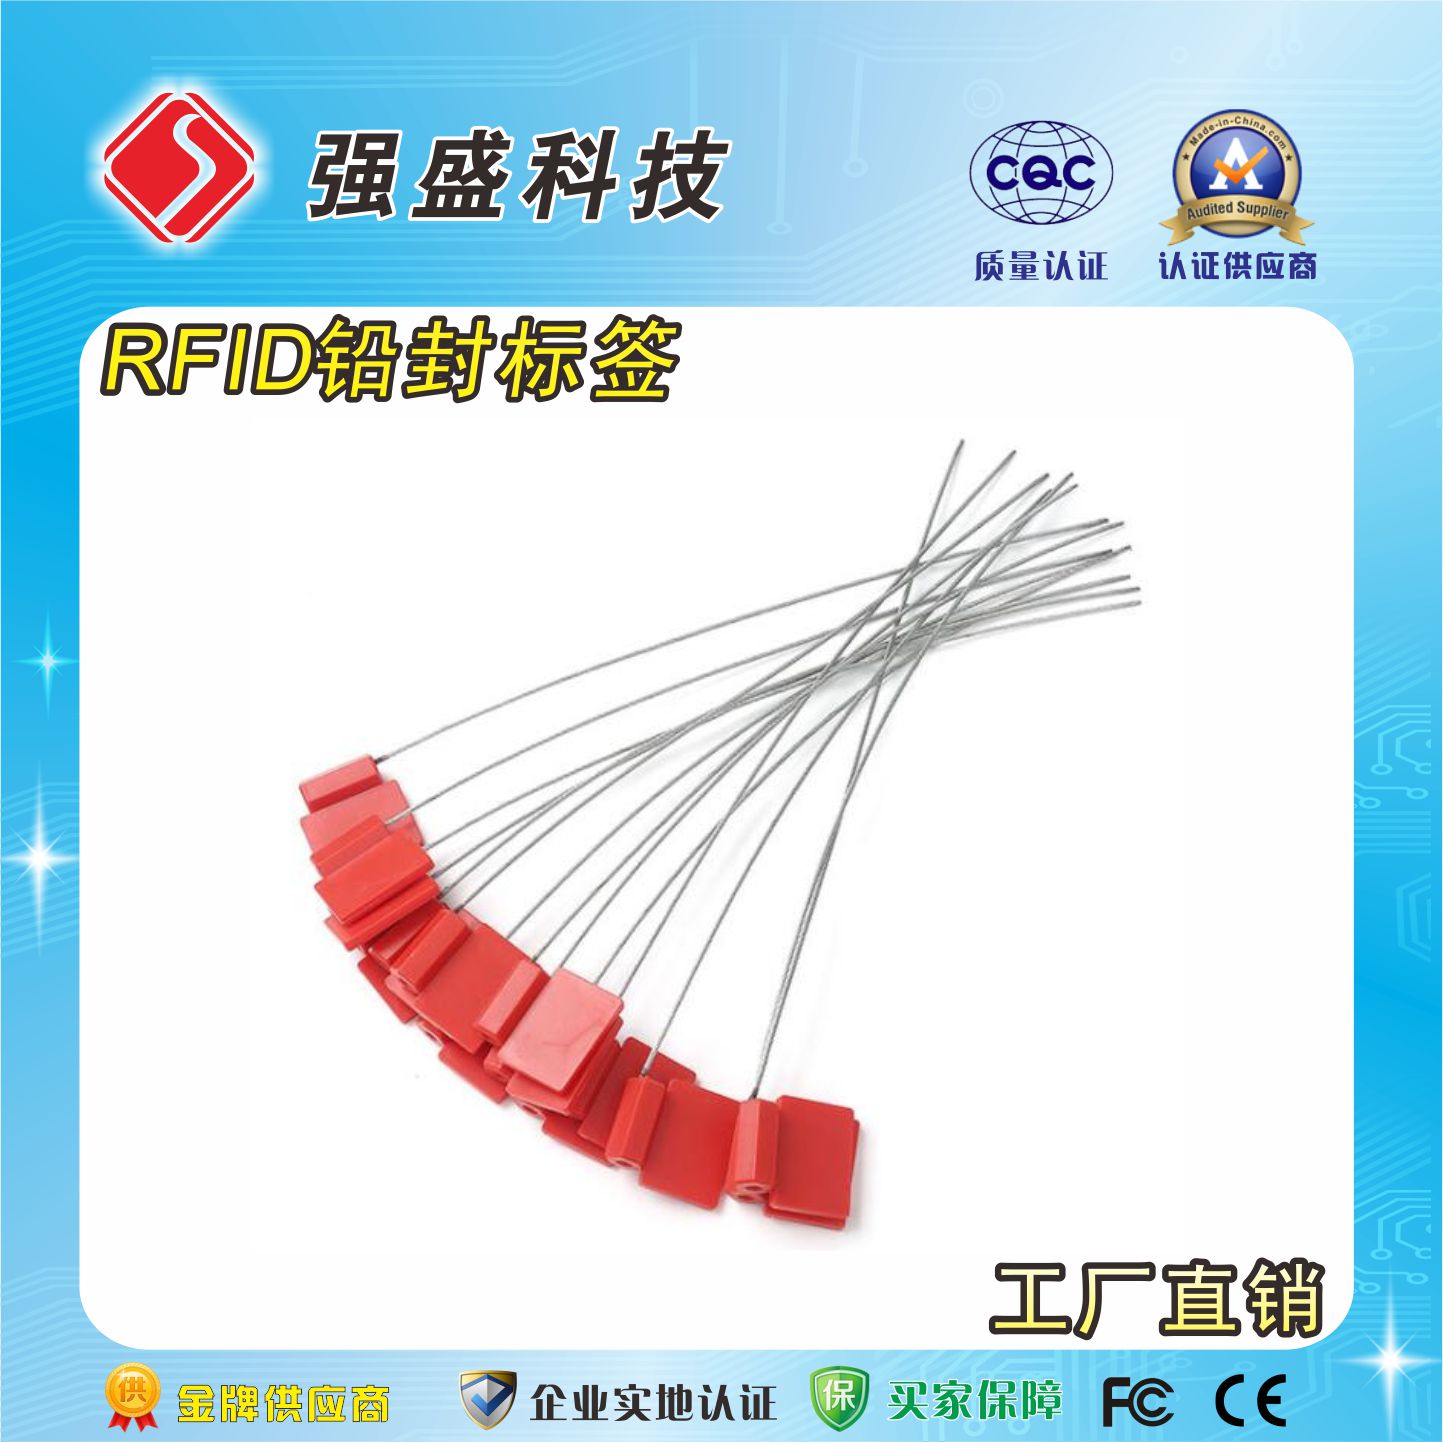 厂家供应铅封标签 铅封RFID电子标签价格 高频钢丝绳铅封制作成本7